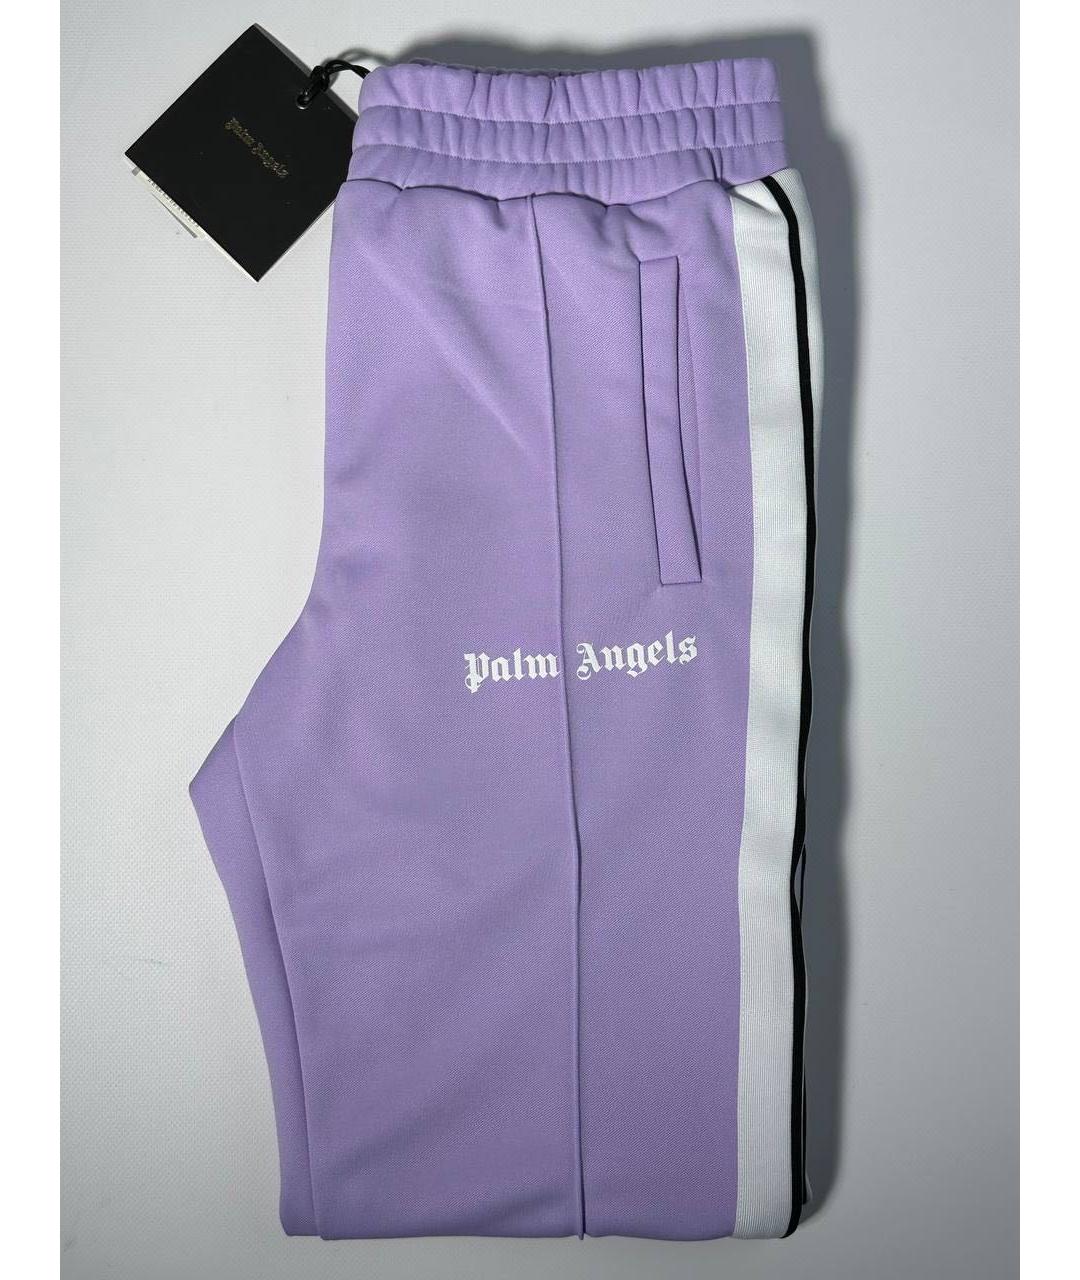 PALM ANGELS Фиолетовый полиэстеровый спортивный костюм, фото 2